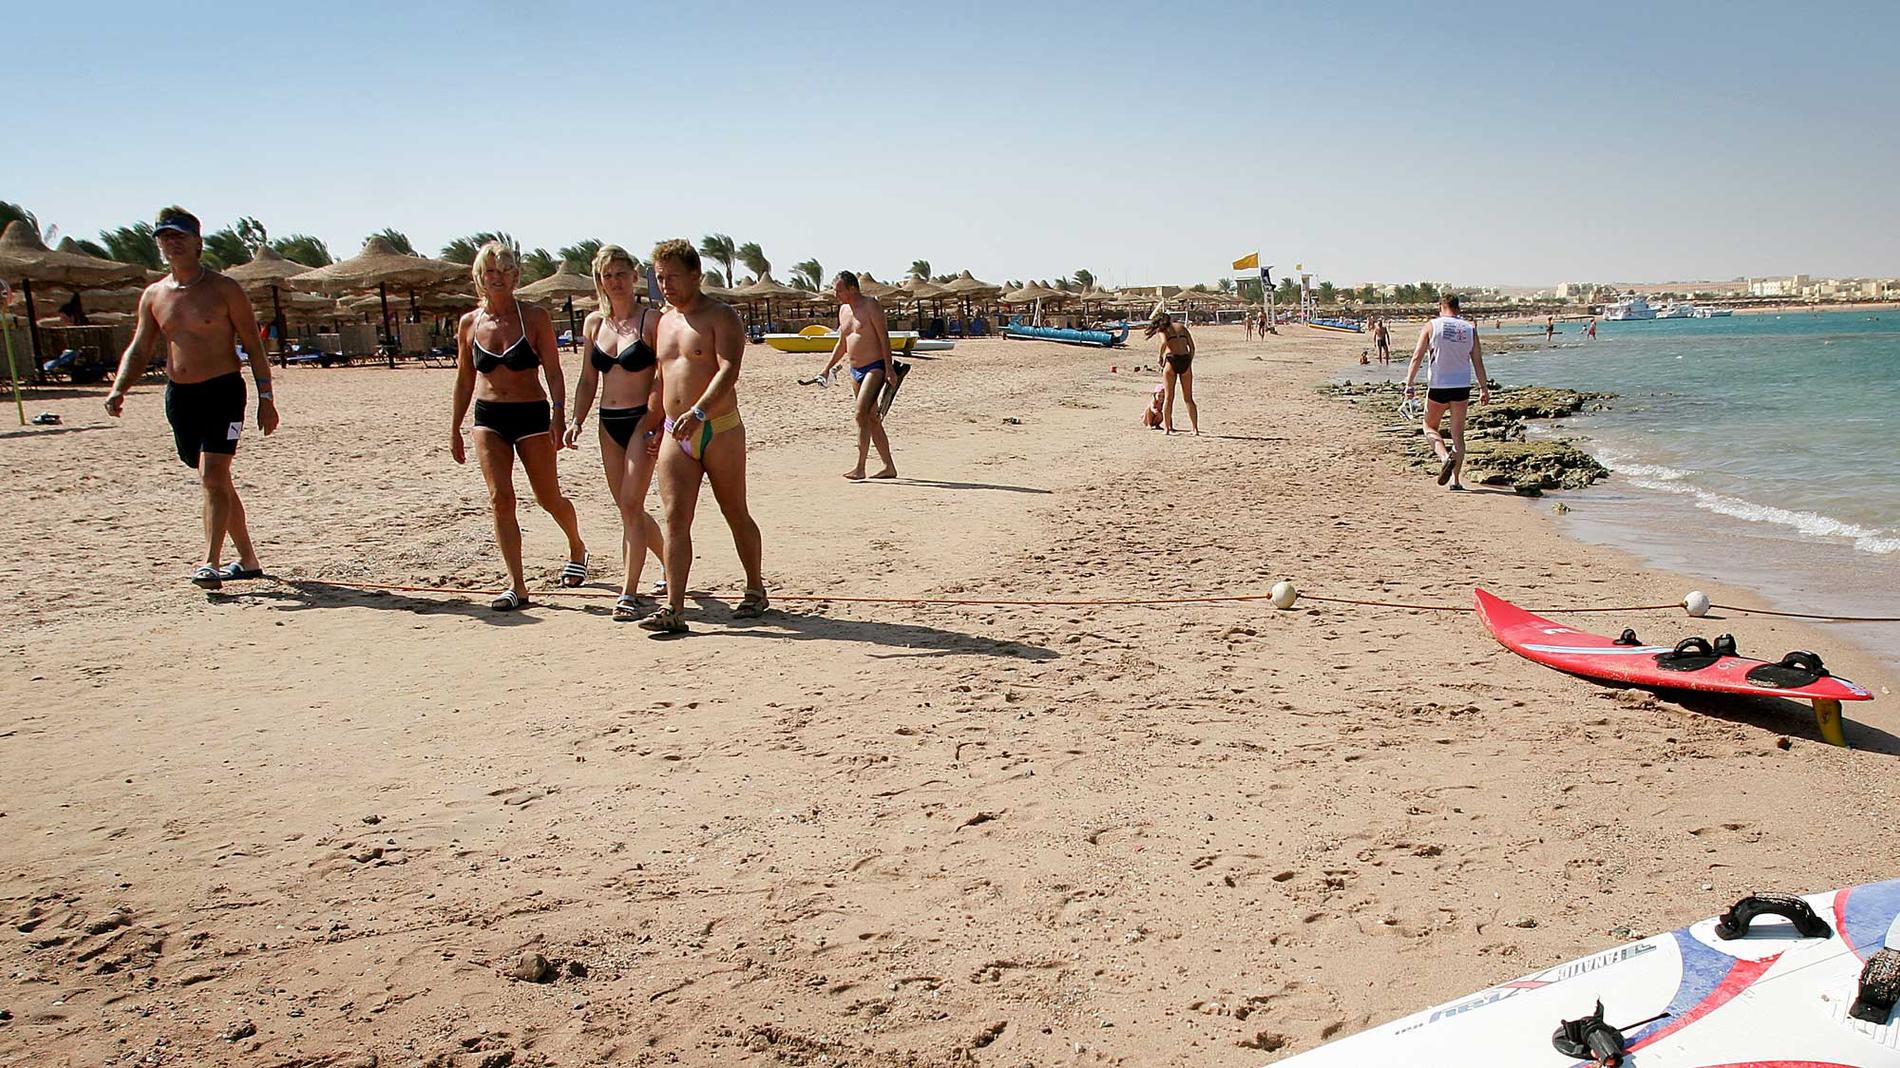 Turistnäringen i Egypten tycks kunna andas ut: bikini, alkohol och både män och kvinnor på samma strand kommer sannolikt att tillåtas även av den nyvalda regimen.